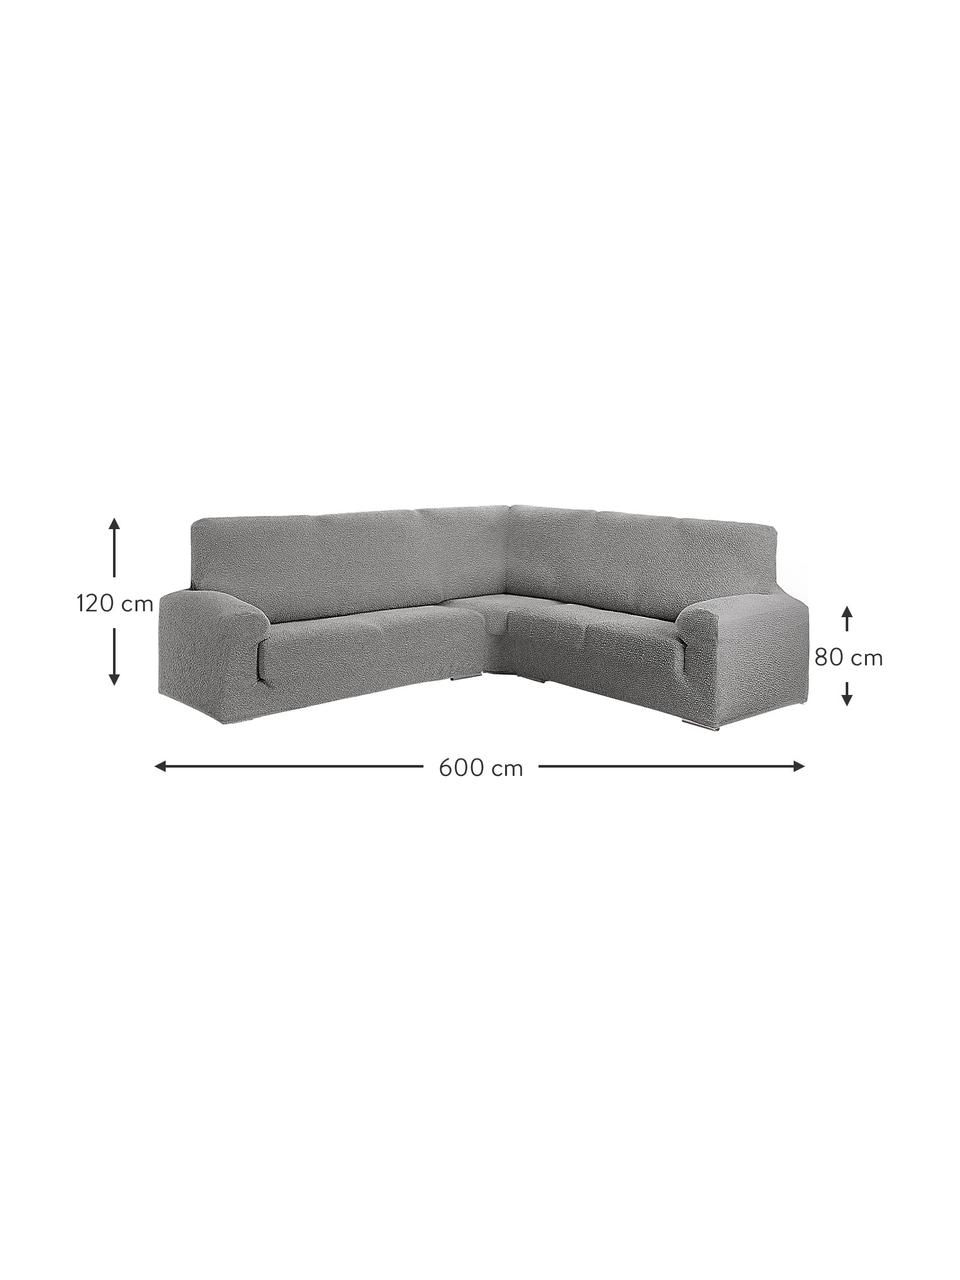 Pokrowiec na sofę narożną Roc, 55% poliester, 35% bawełna, 10% elastomer, Szary, S 600 x W 120 cm